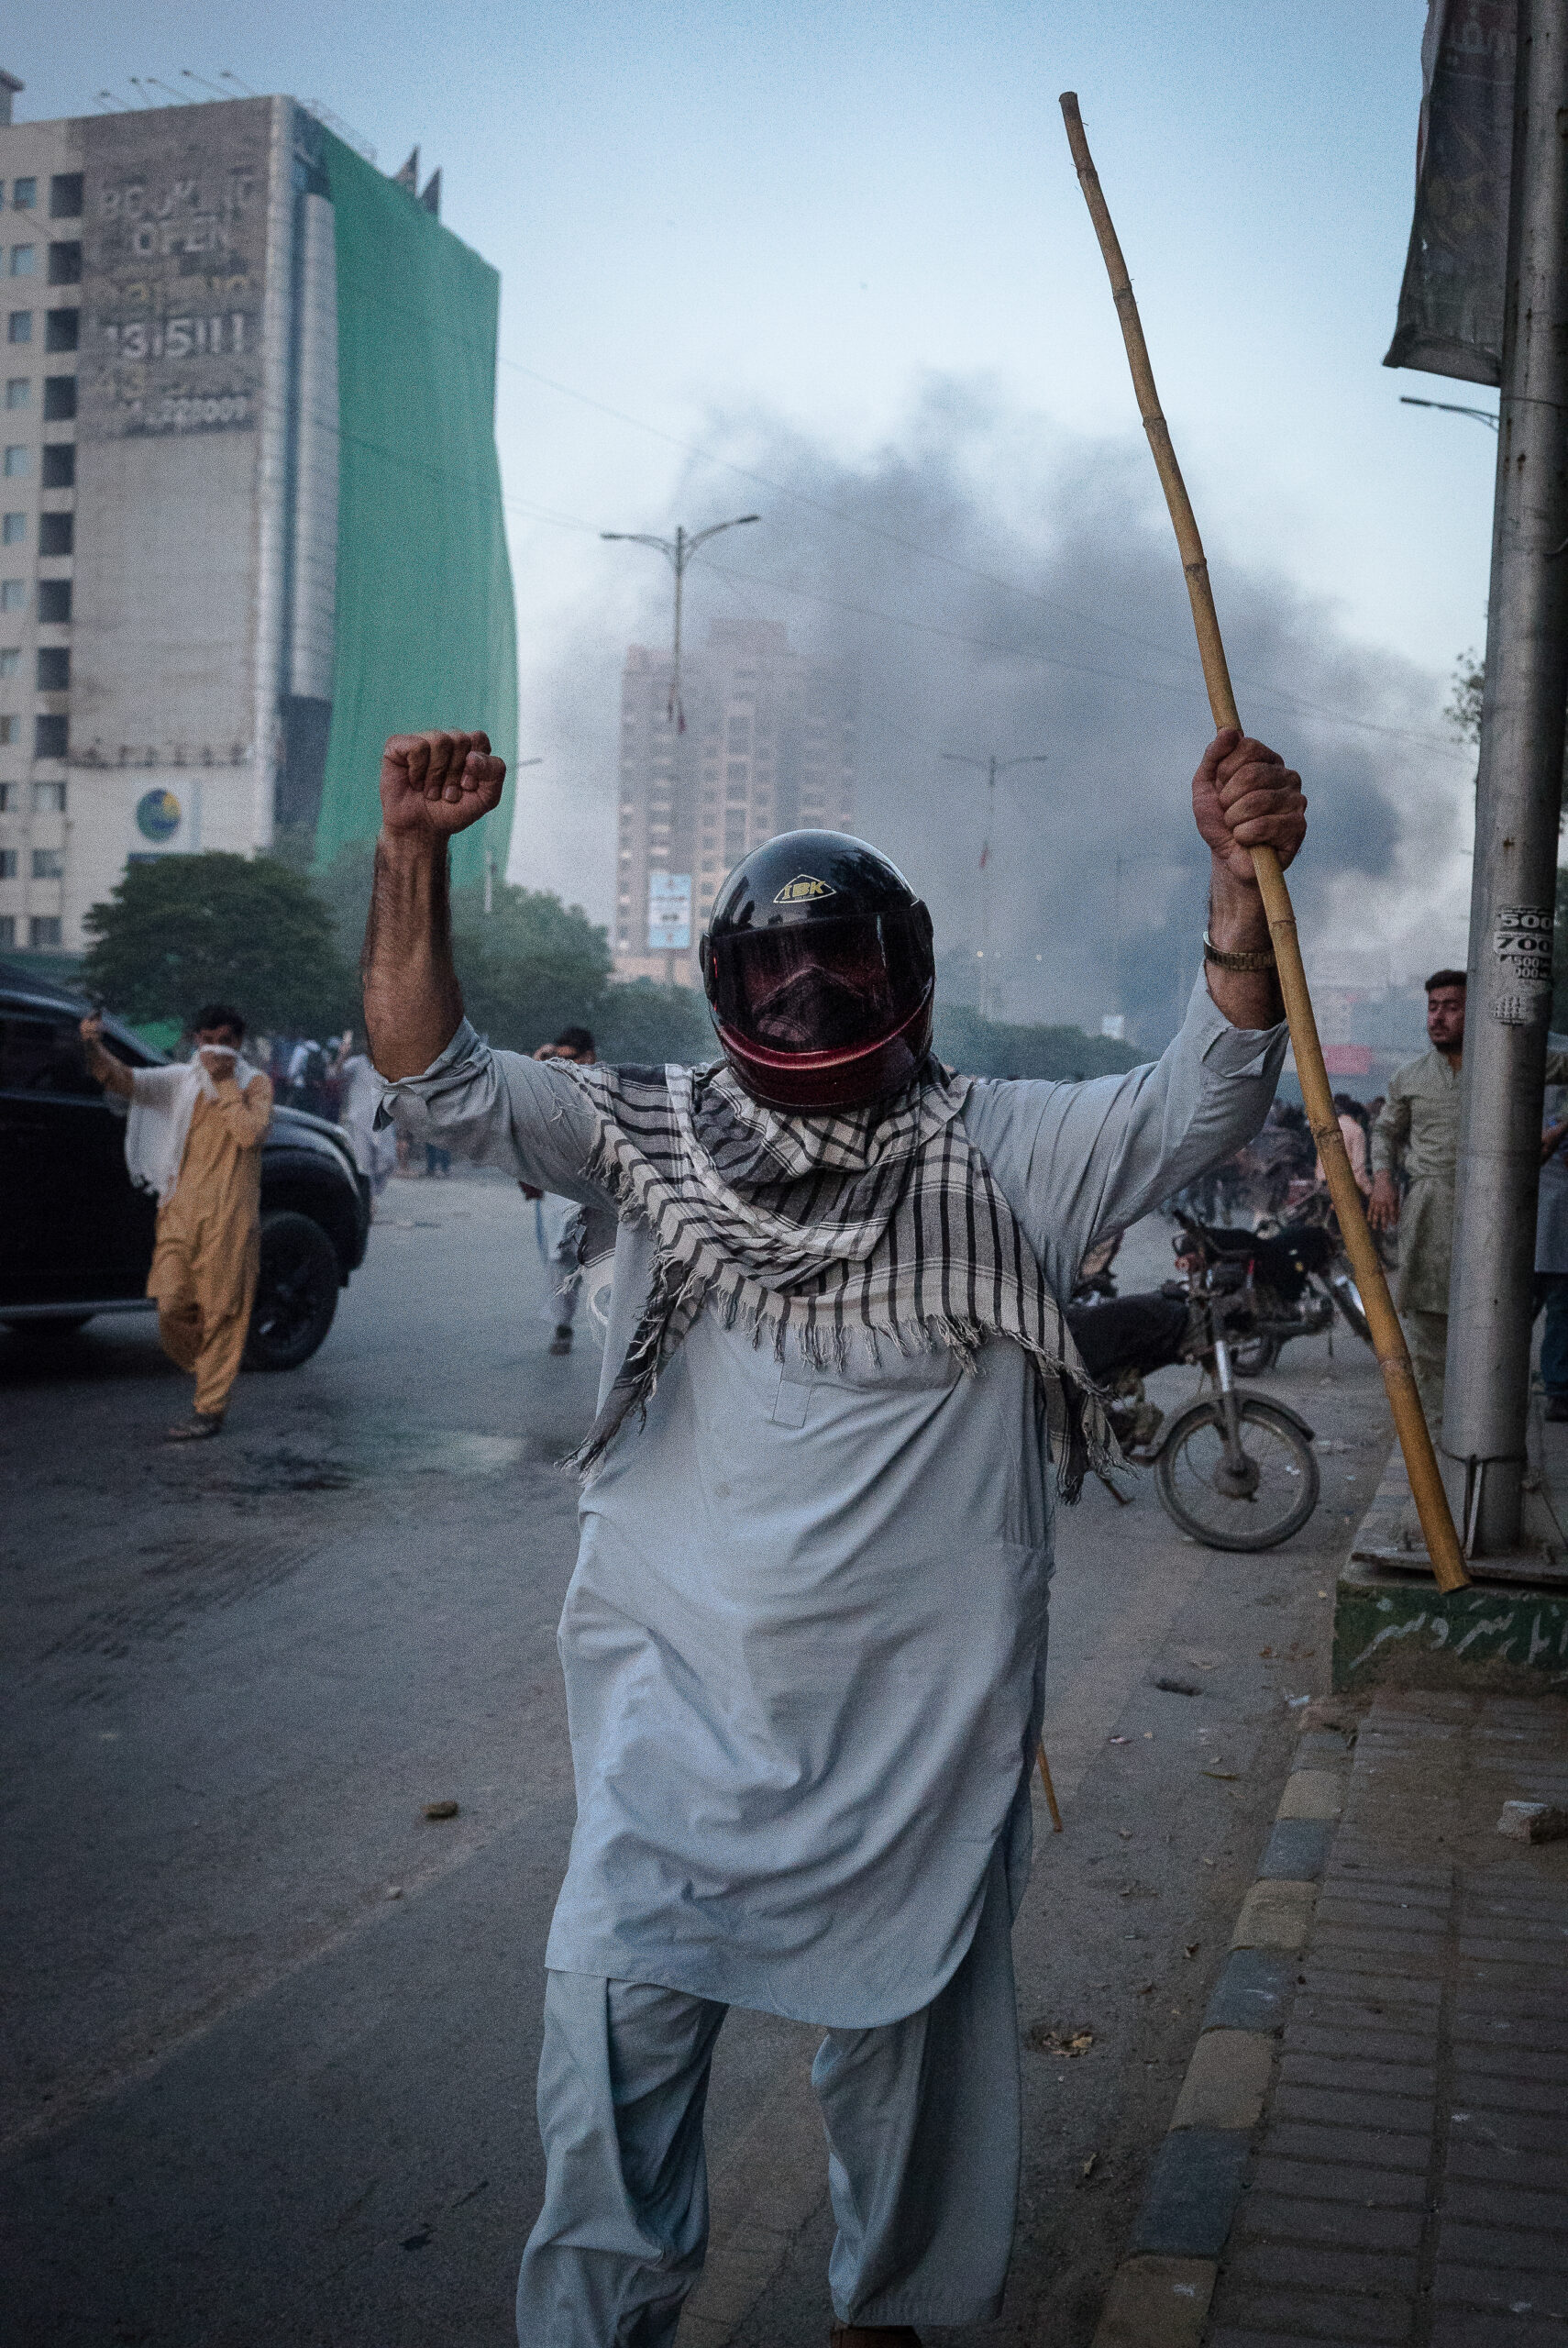 Un partidario del PTI sosteniendo un lathi, Karachi, 9 de mayo. © Laurent Gayer